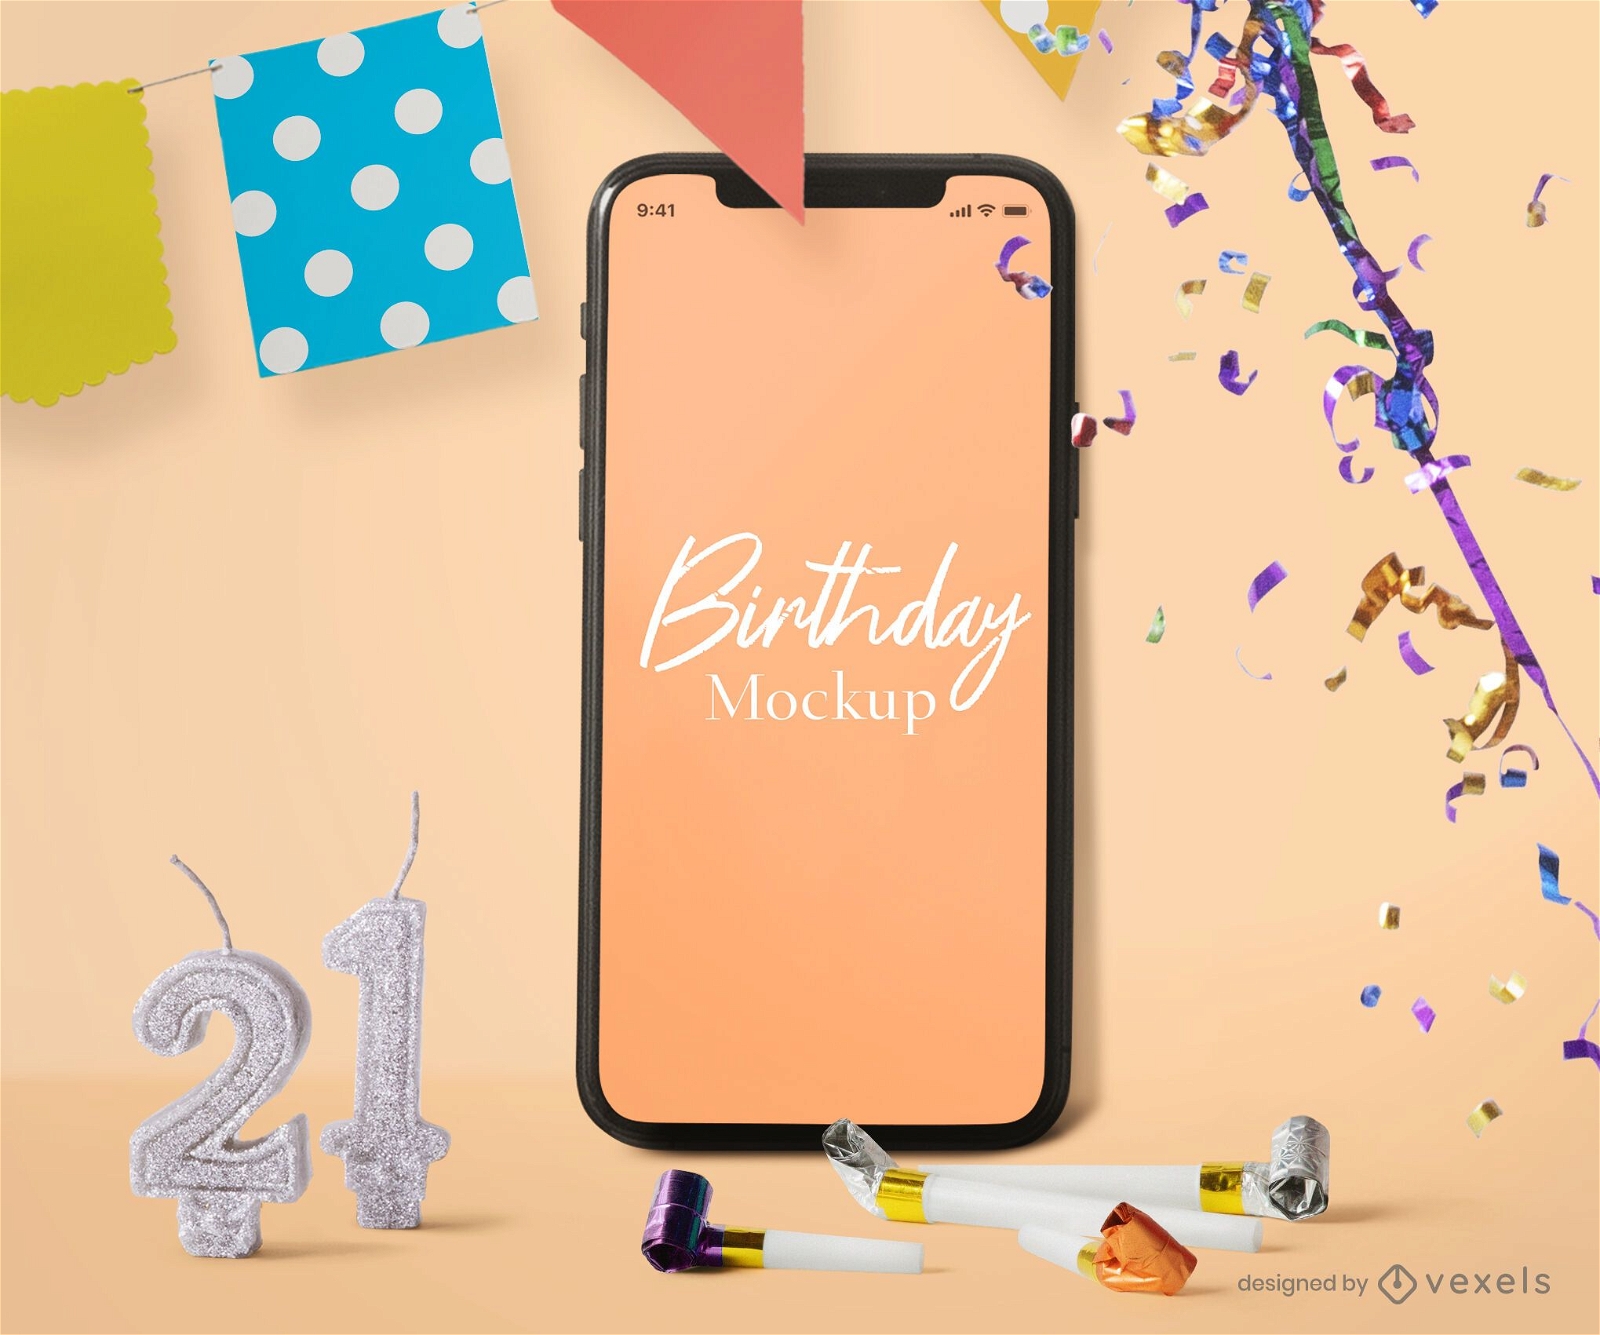 Composición de maqueta de iphone de cumpleaños